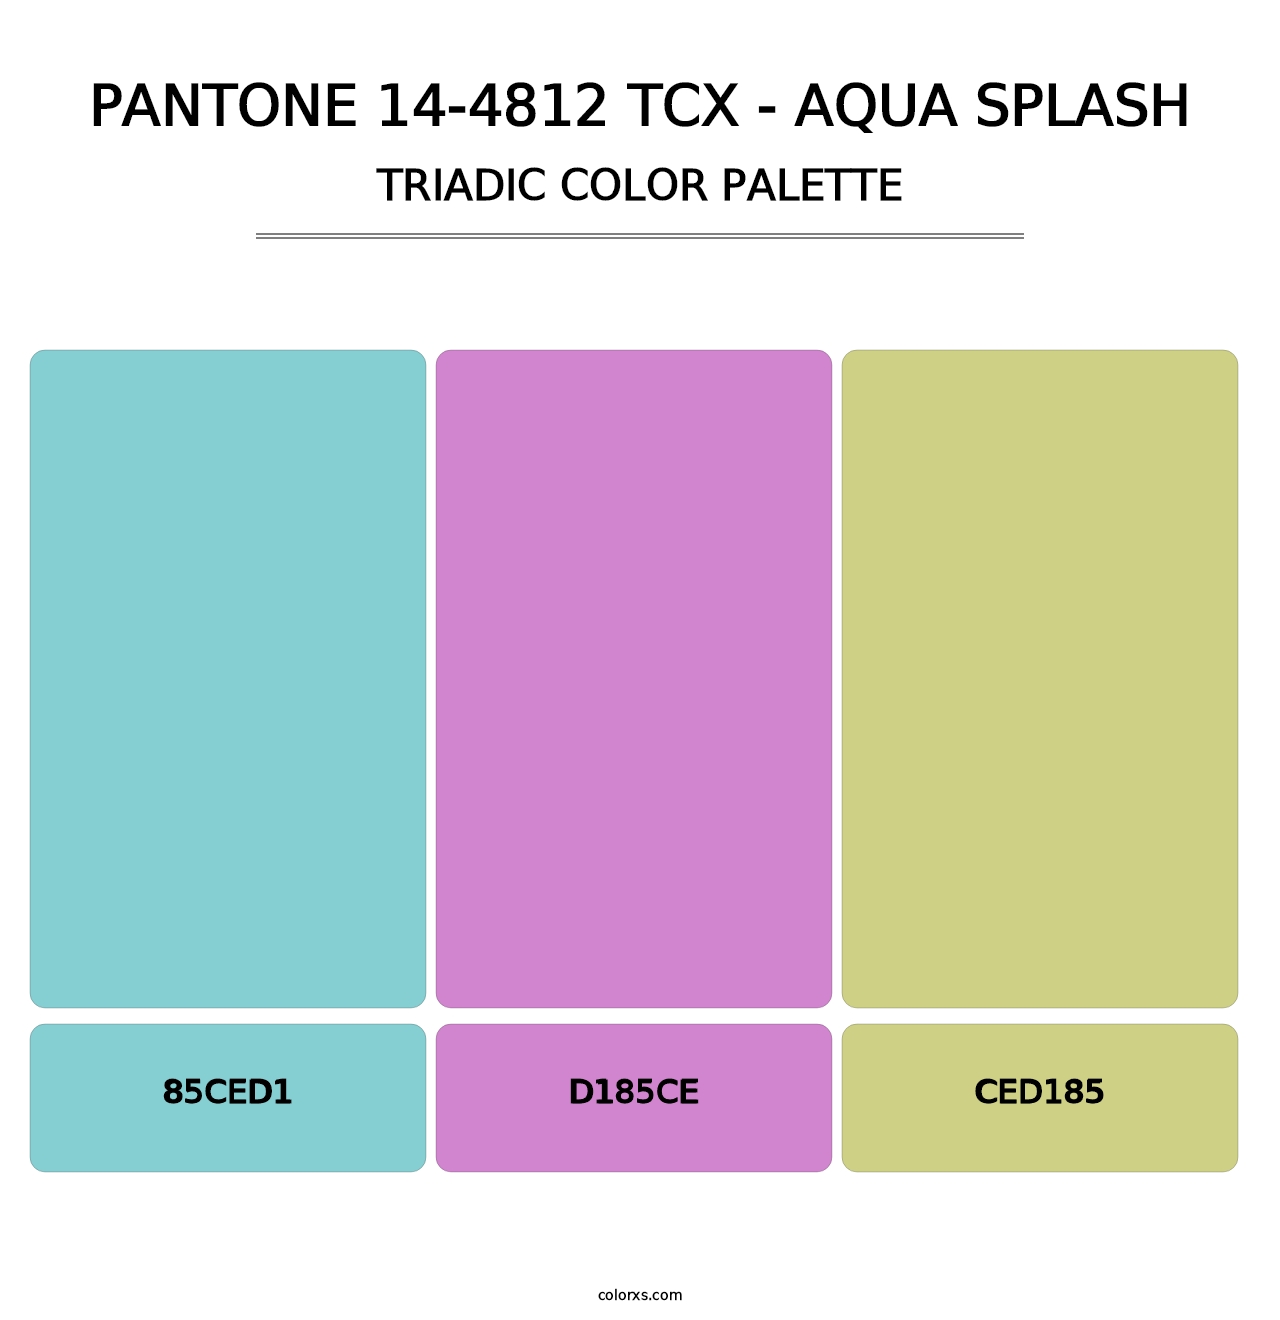 PANTONE 14-4812 TCX - Aqua Splash - Triadic Color Palette